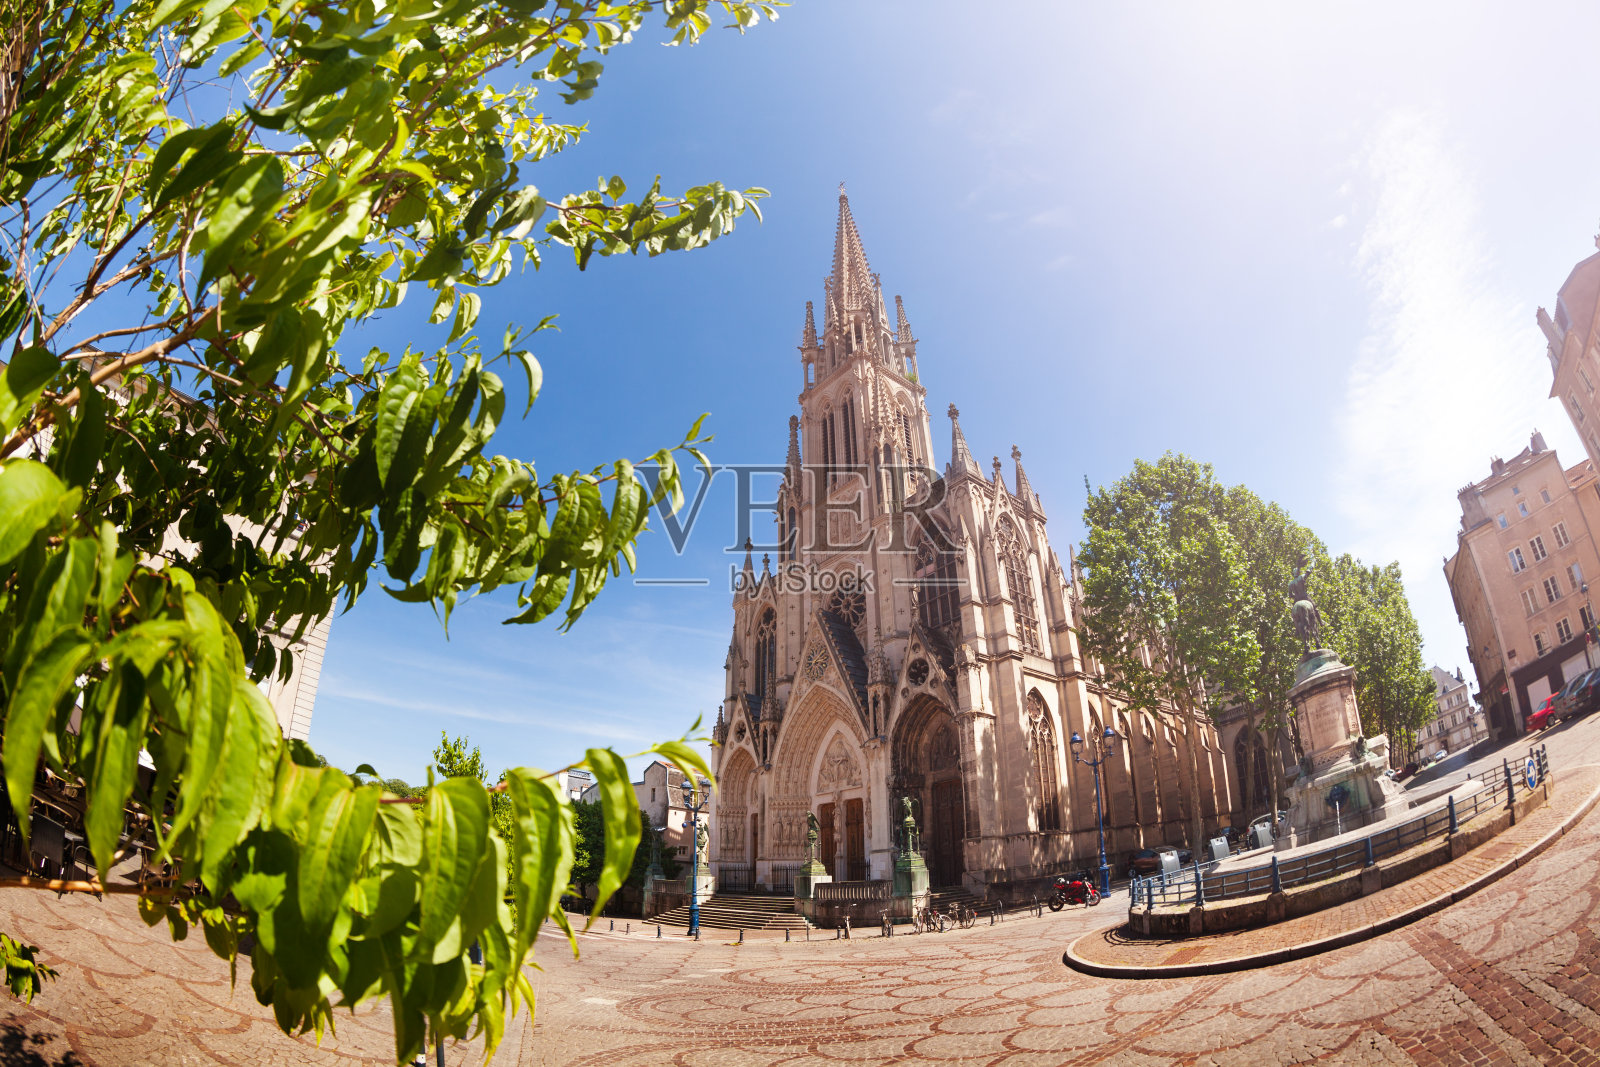 圣埃普伏尔大教堂和南希市广场照片摄影图片